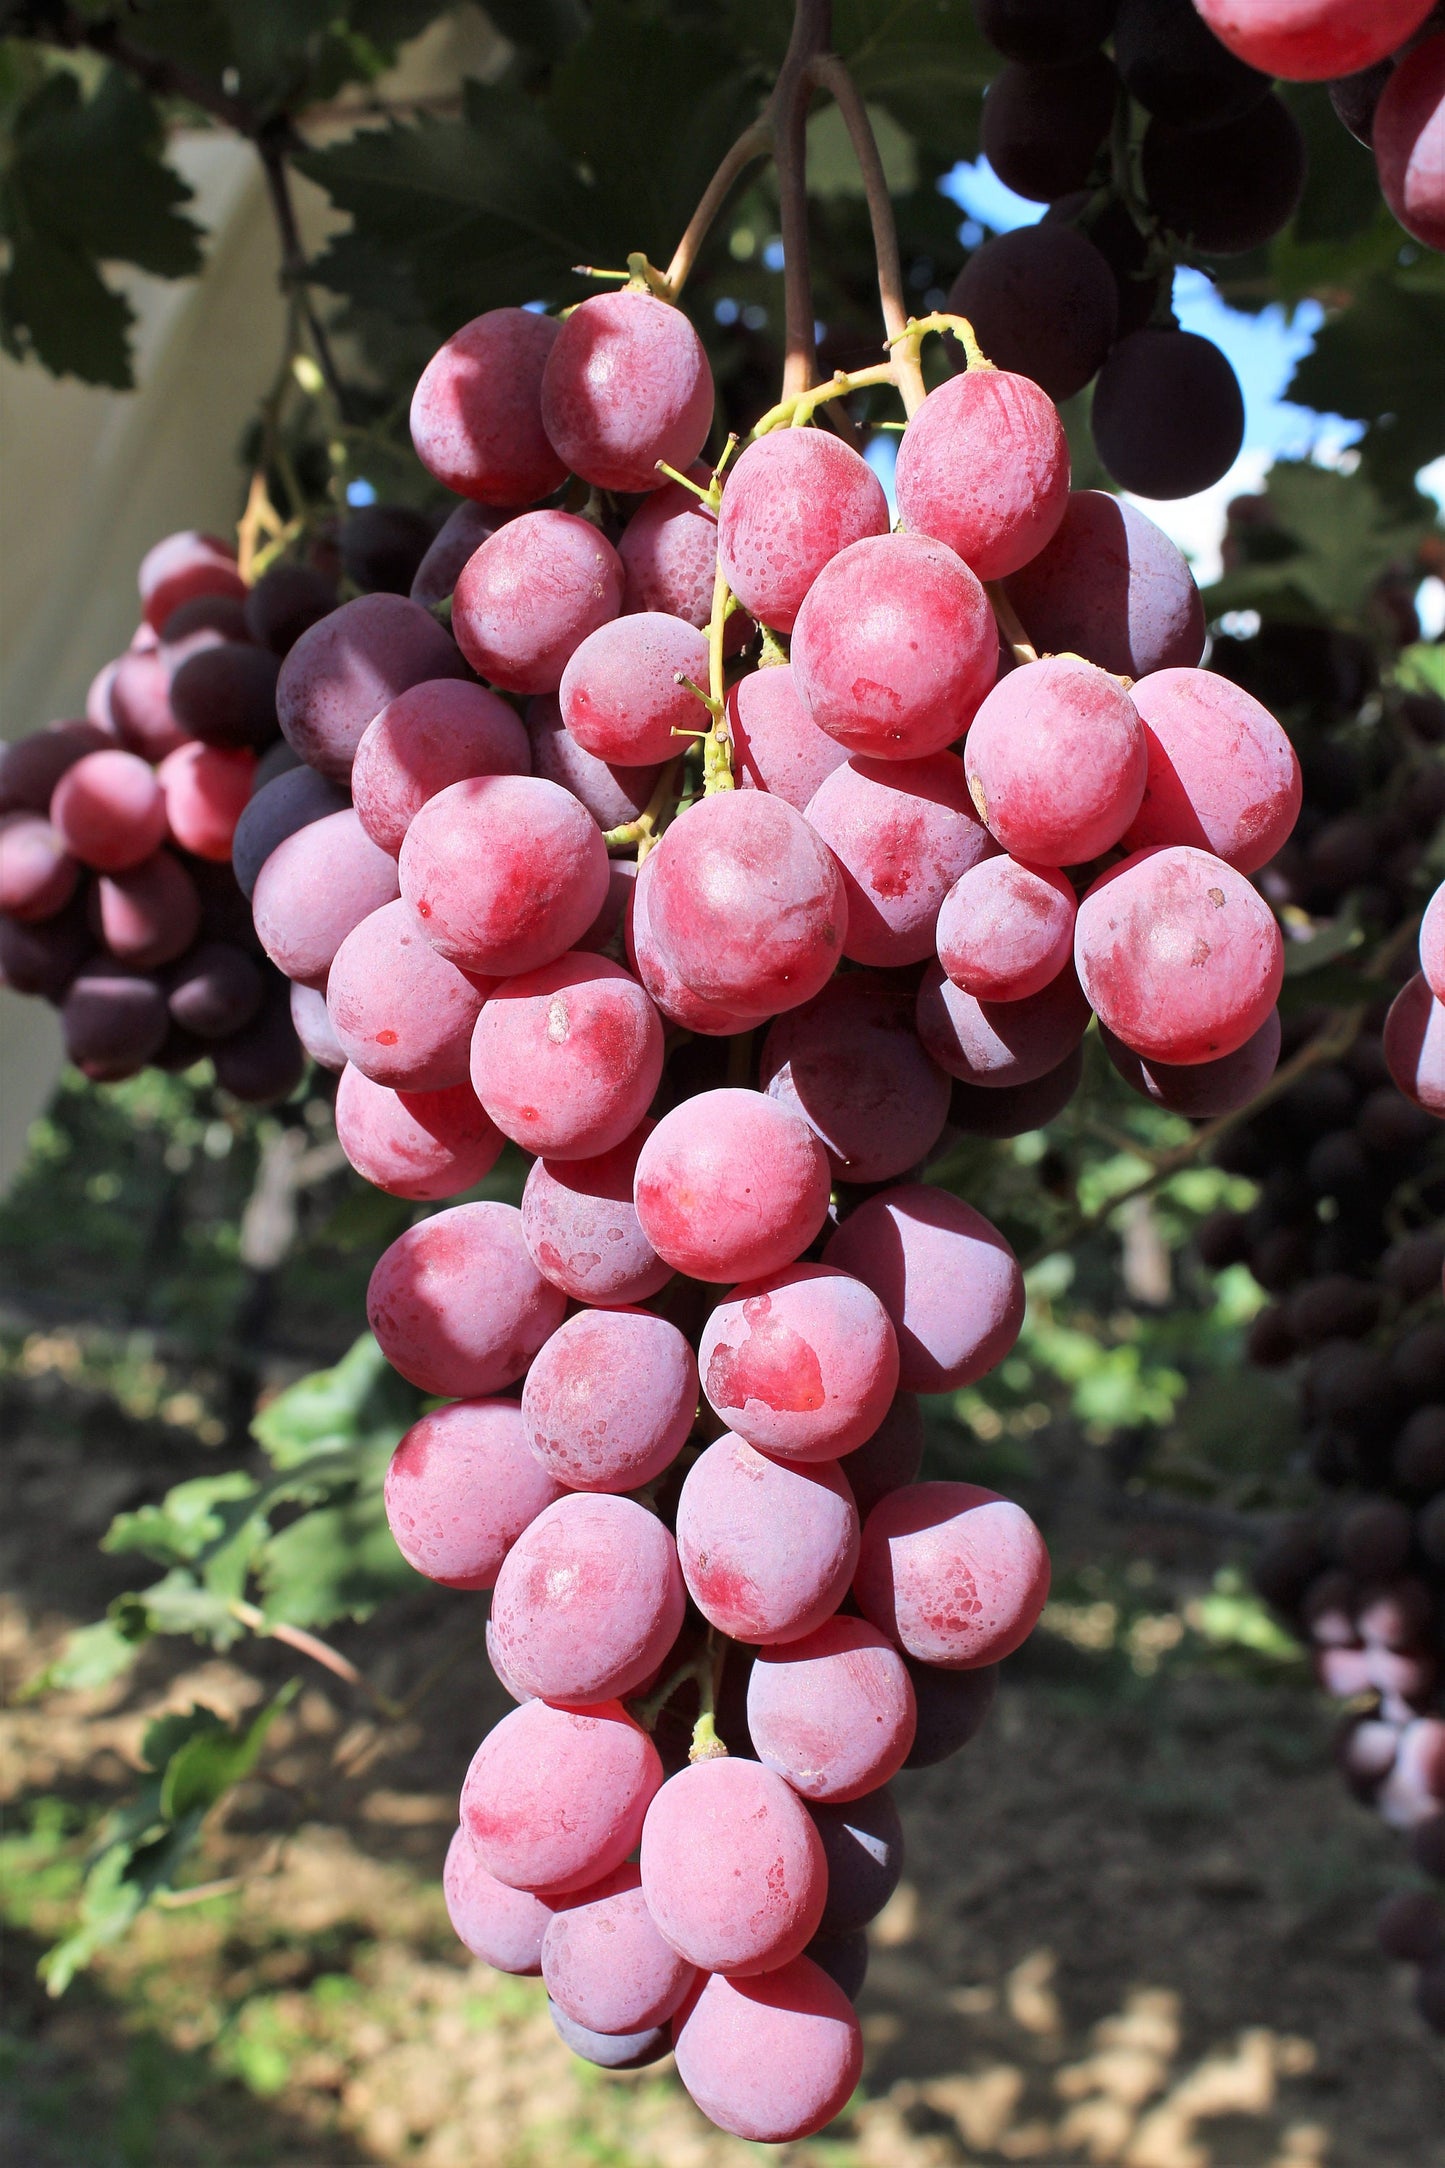 10 Giant RED GLOBE GRAPE Vitis Vinifera Fruit Vine Seeds